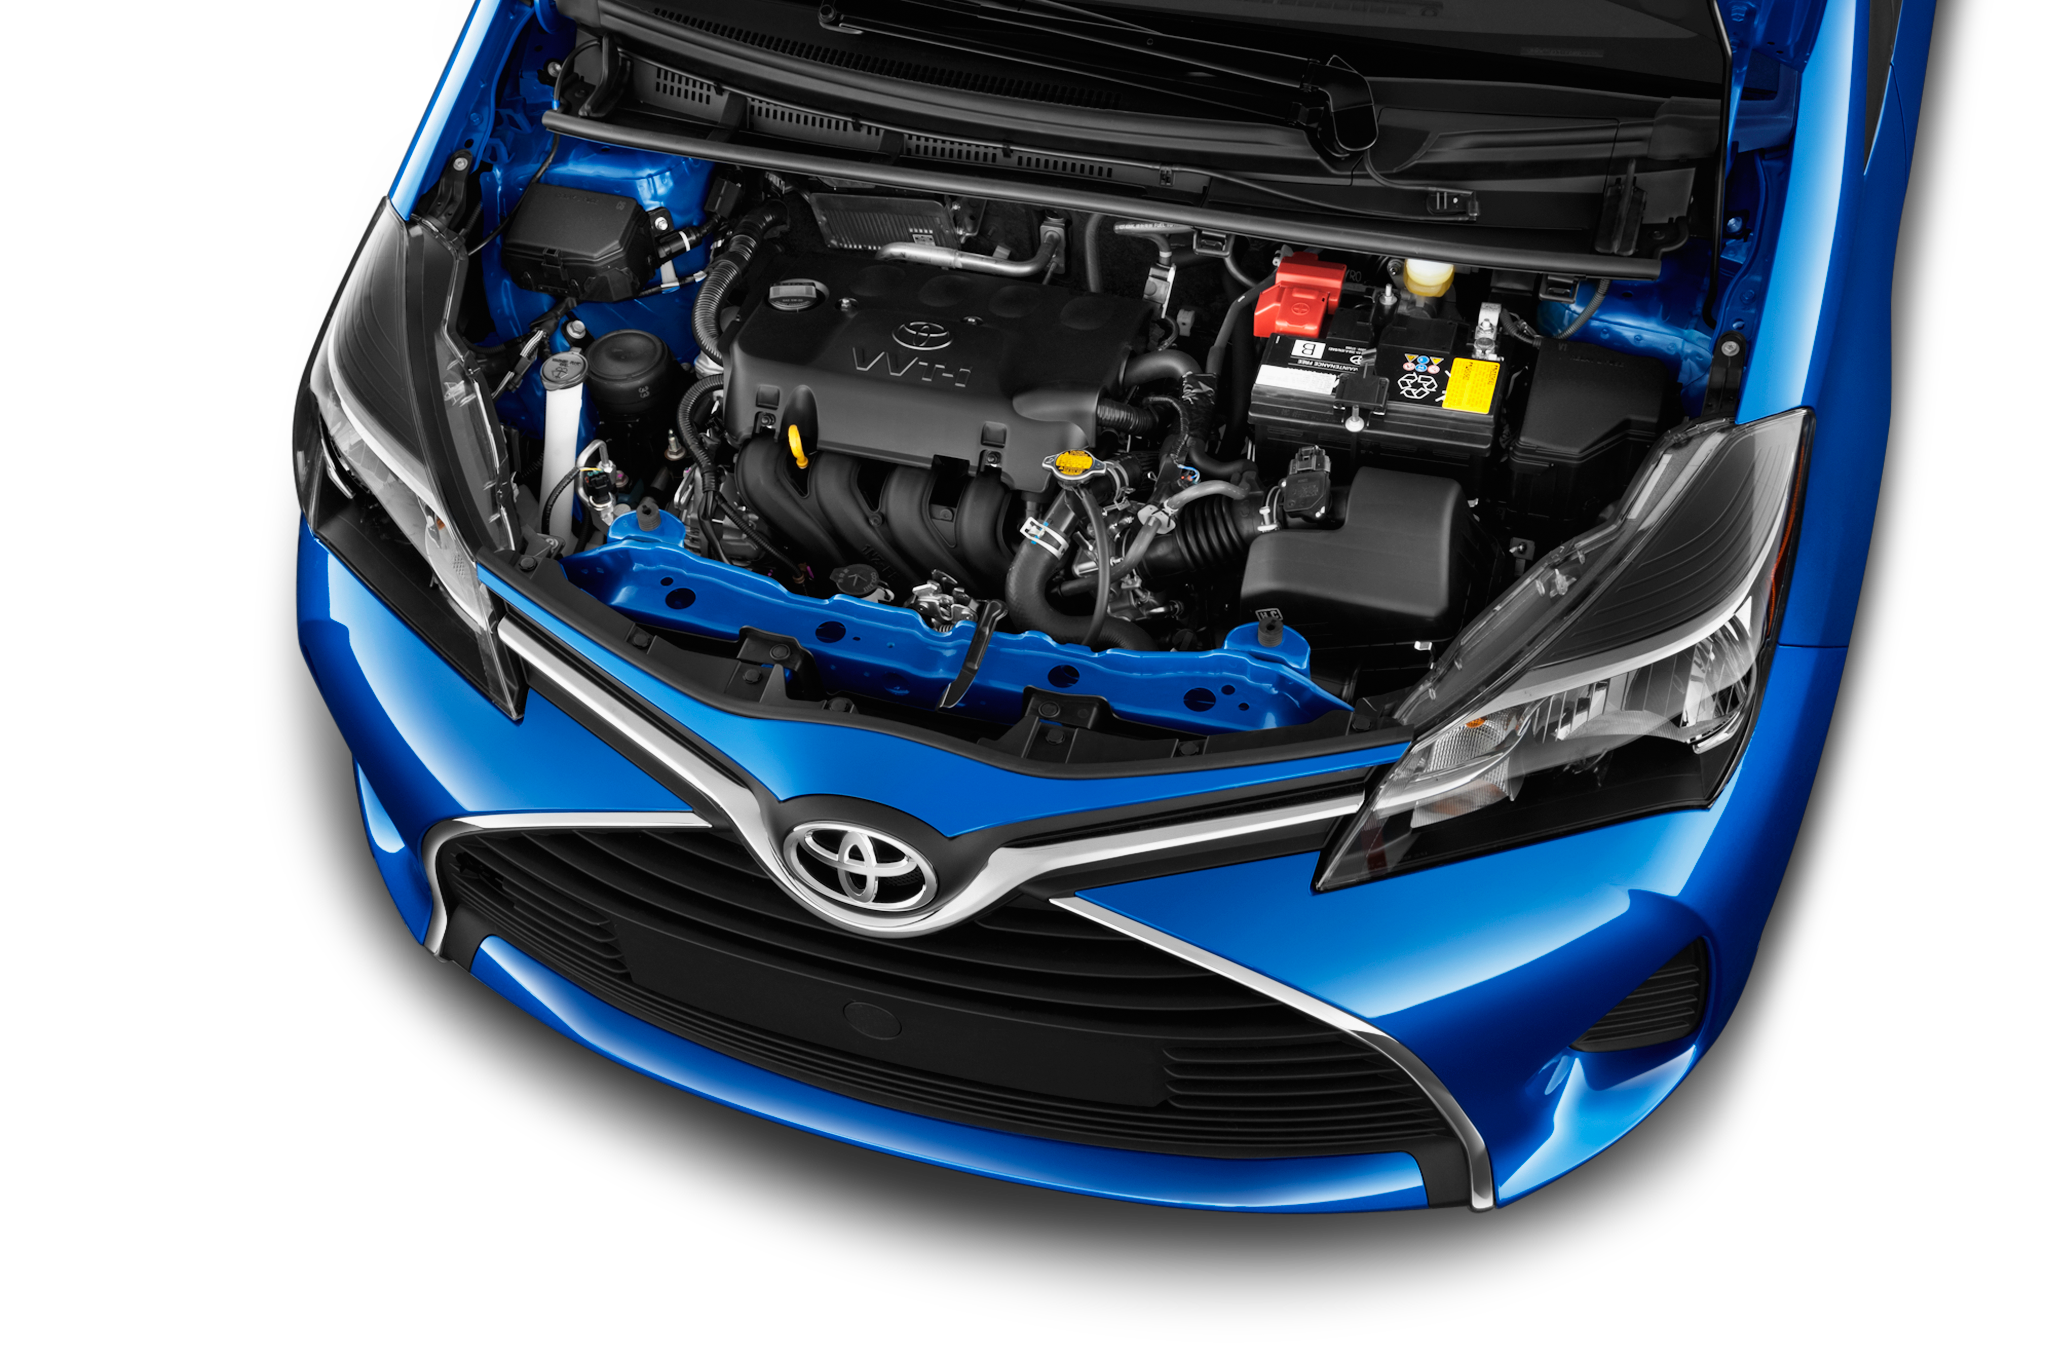 Khác biệt giữa Toyota Yaris 2017 và thế hệ cũ